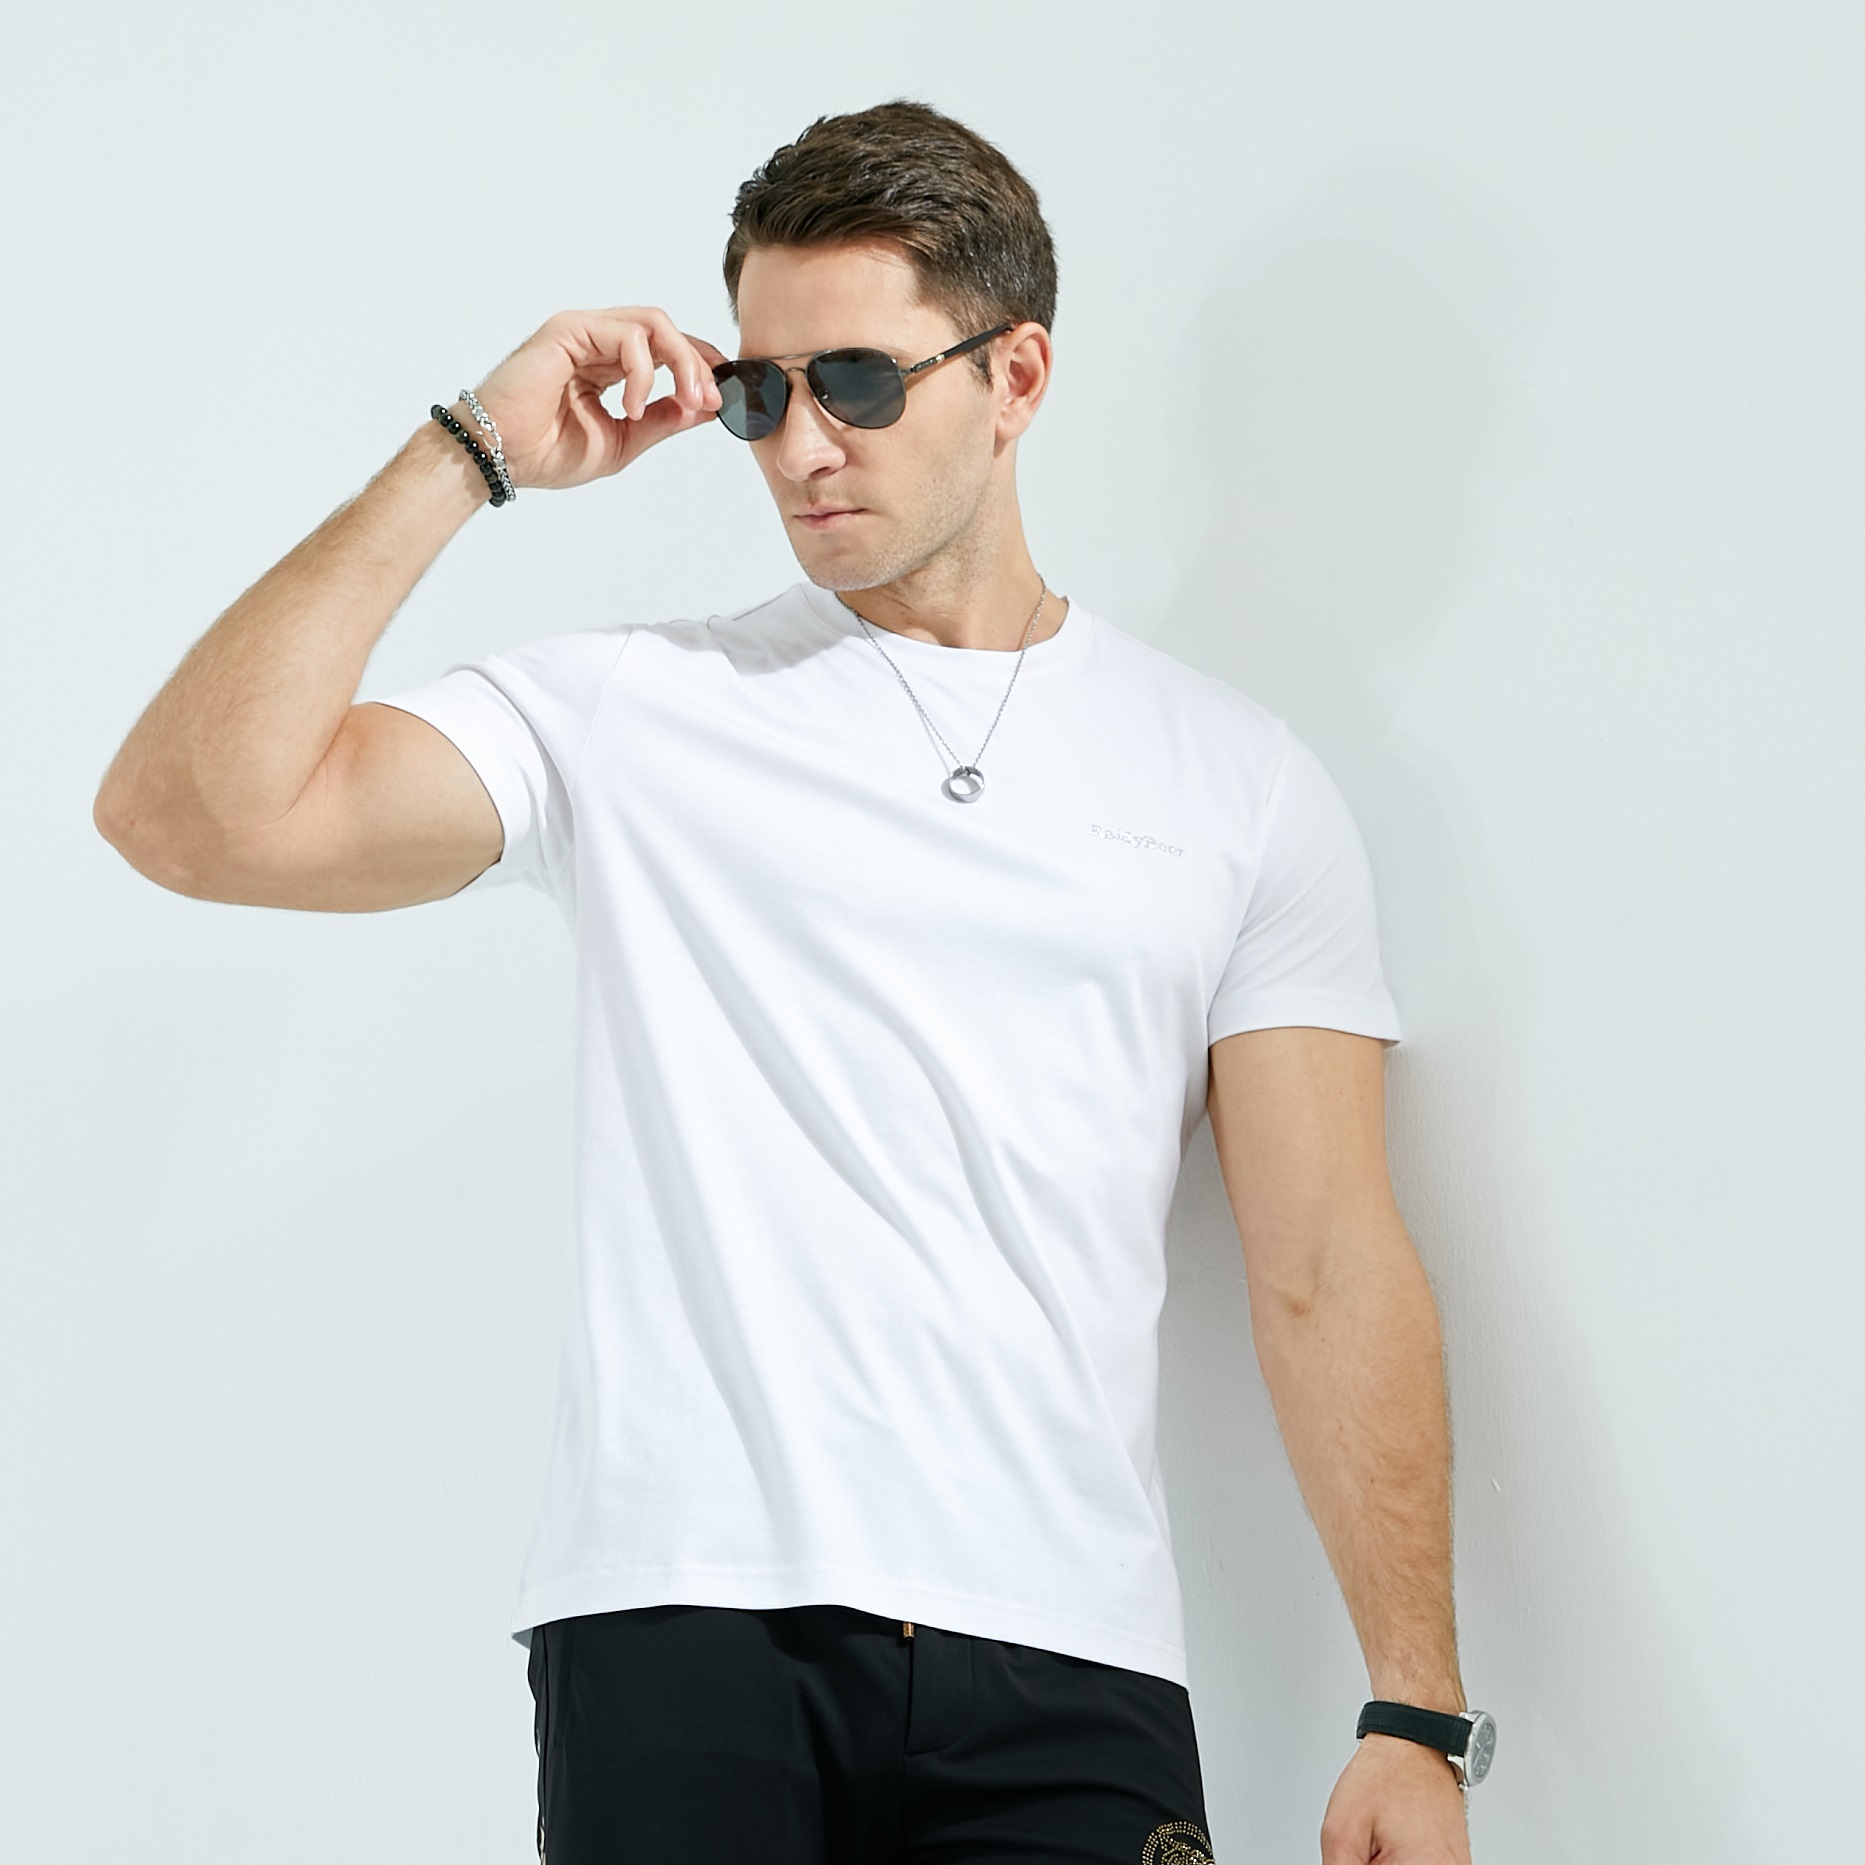 Индивидуальный простой дизайн, белая футболка из 100% хлопка, мужская футболка размера гноя